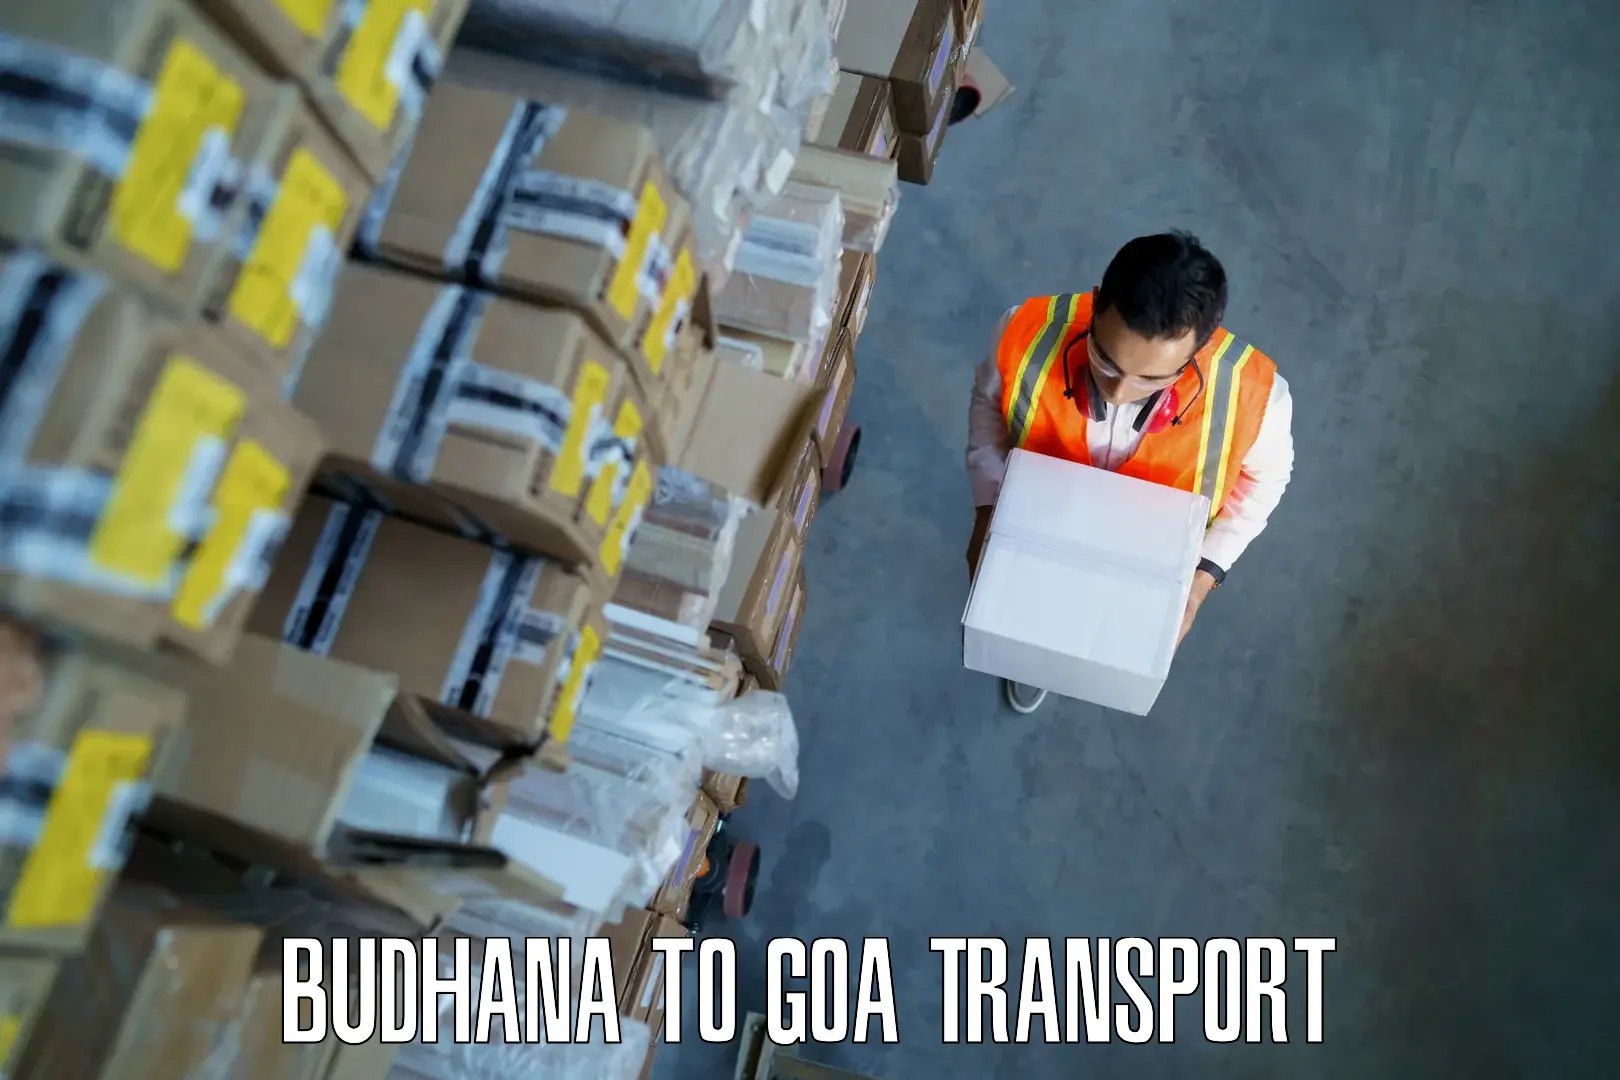 Daily transport service Budhana to Goa